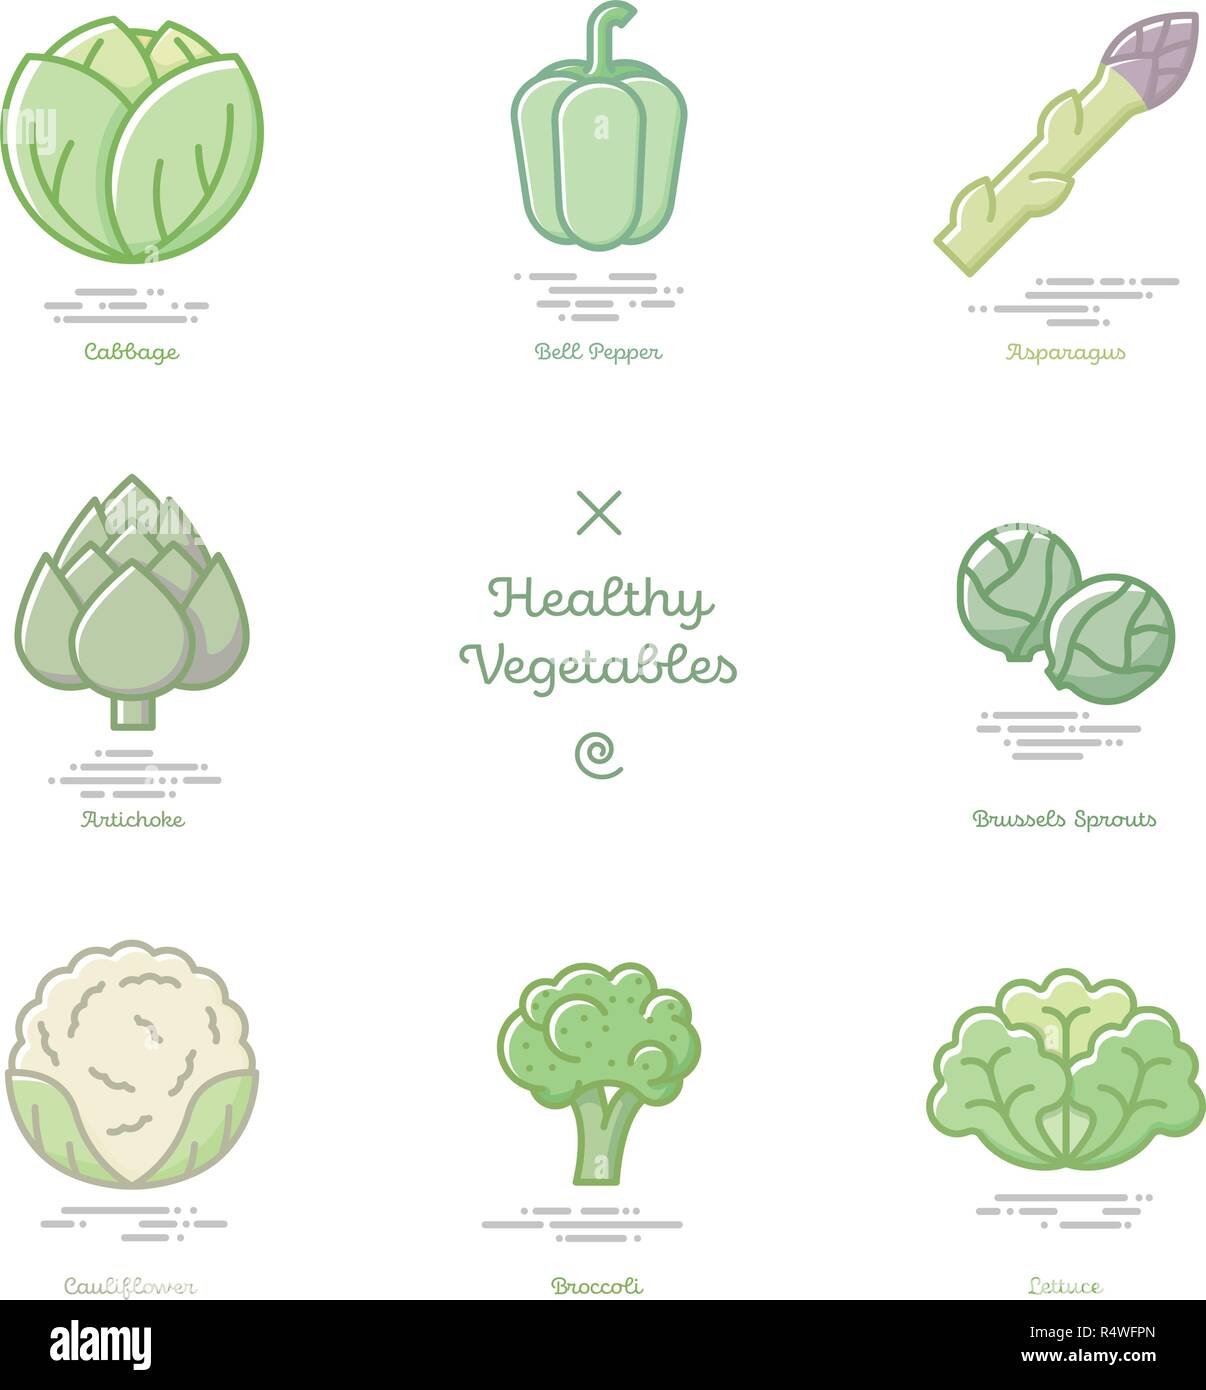 Illustrazione Vettoriale di otto ortaggi sani compresi cavolo, peperone, asparagi, carciofi, cavolini di Bruxelles e cavolfiori, broccoli e lett Illustrazione Vettoriale